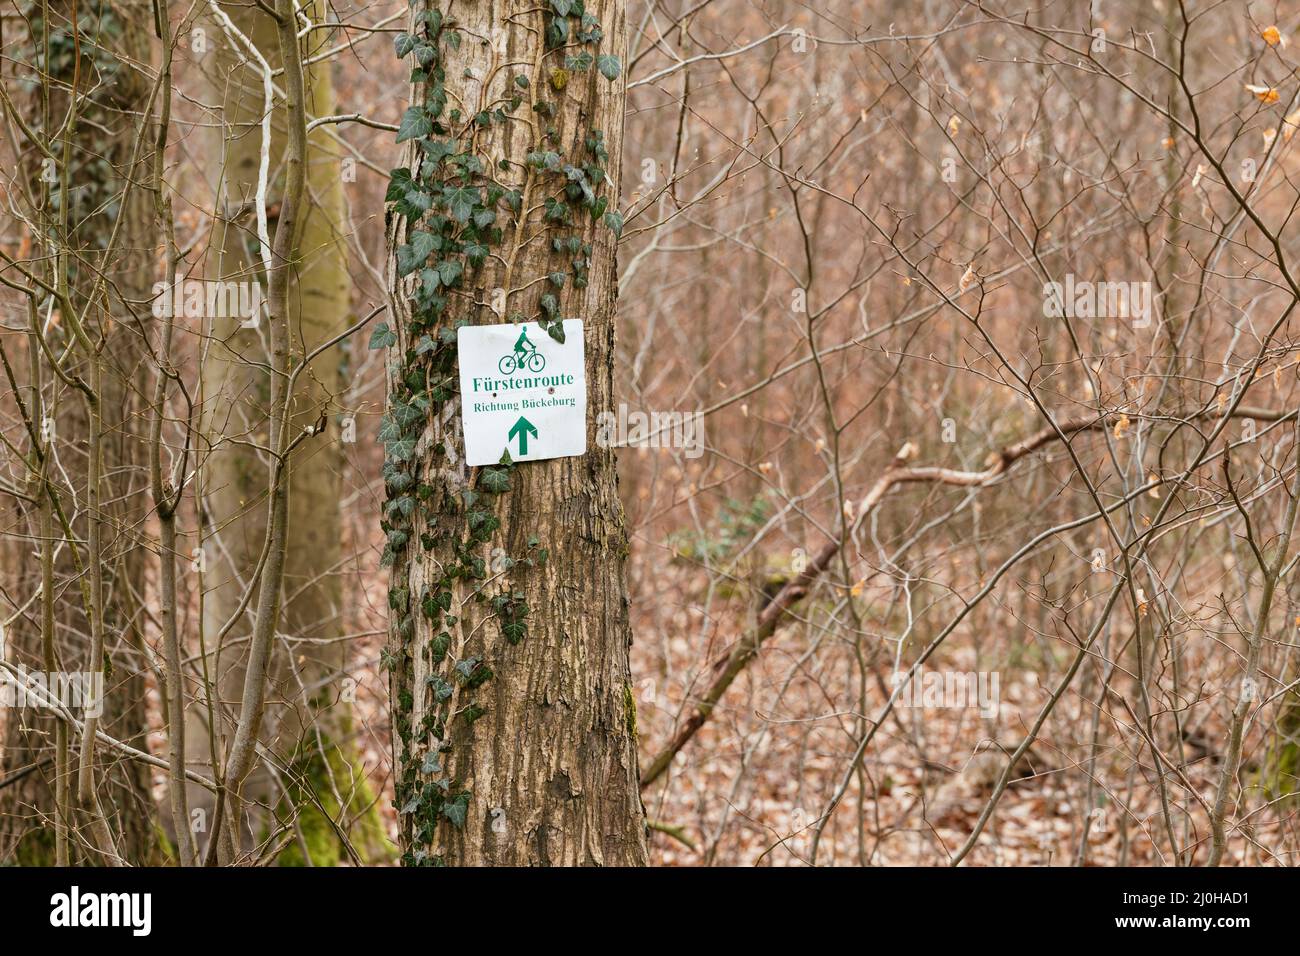 Suivez les panneaux indiquant la route à vélo Fürstenroute dans la forêt de Schaumburger en direction de Bückeburg. Banque D'Images